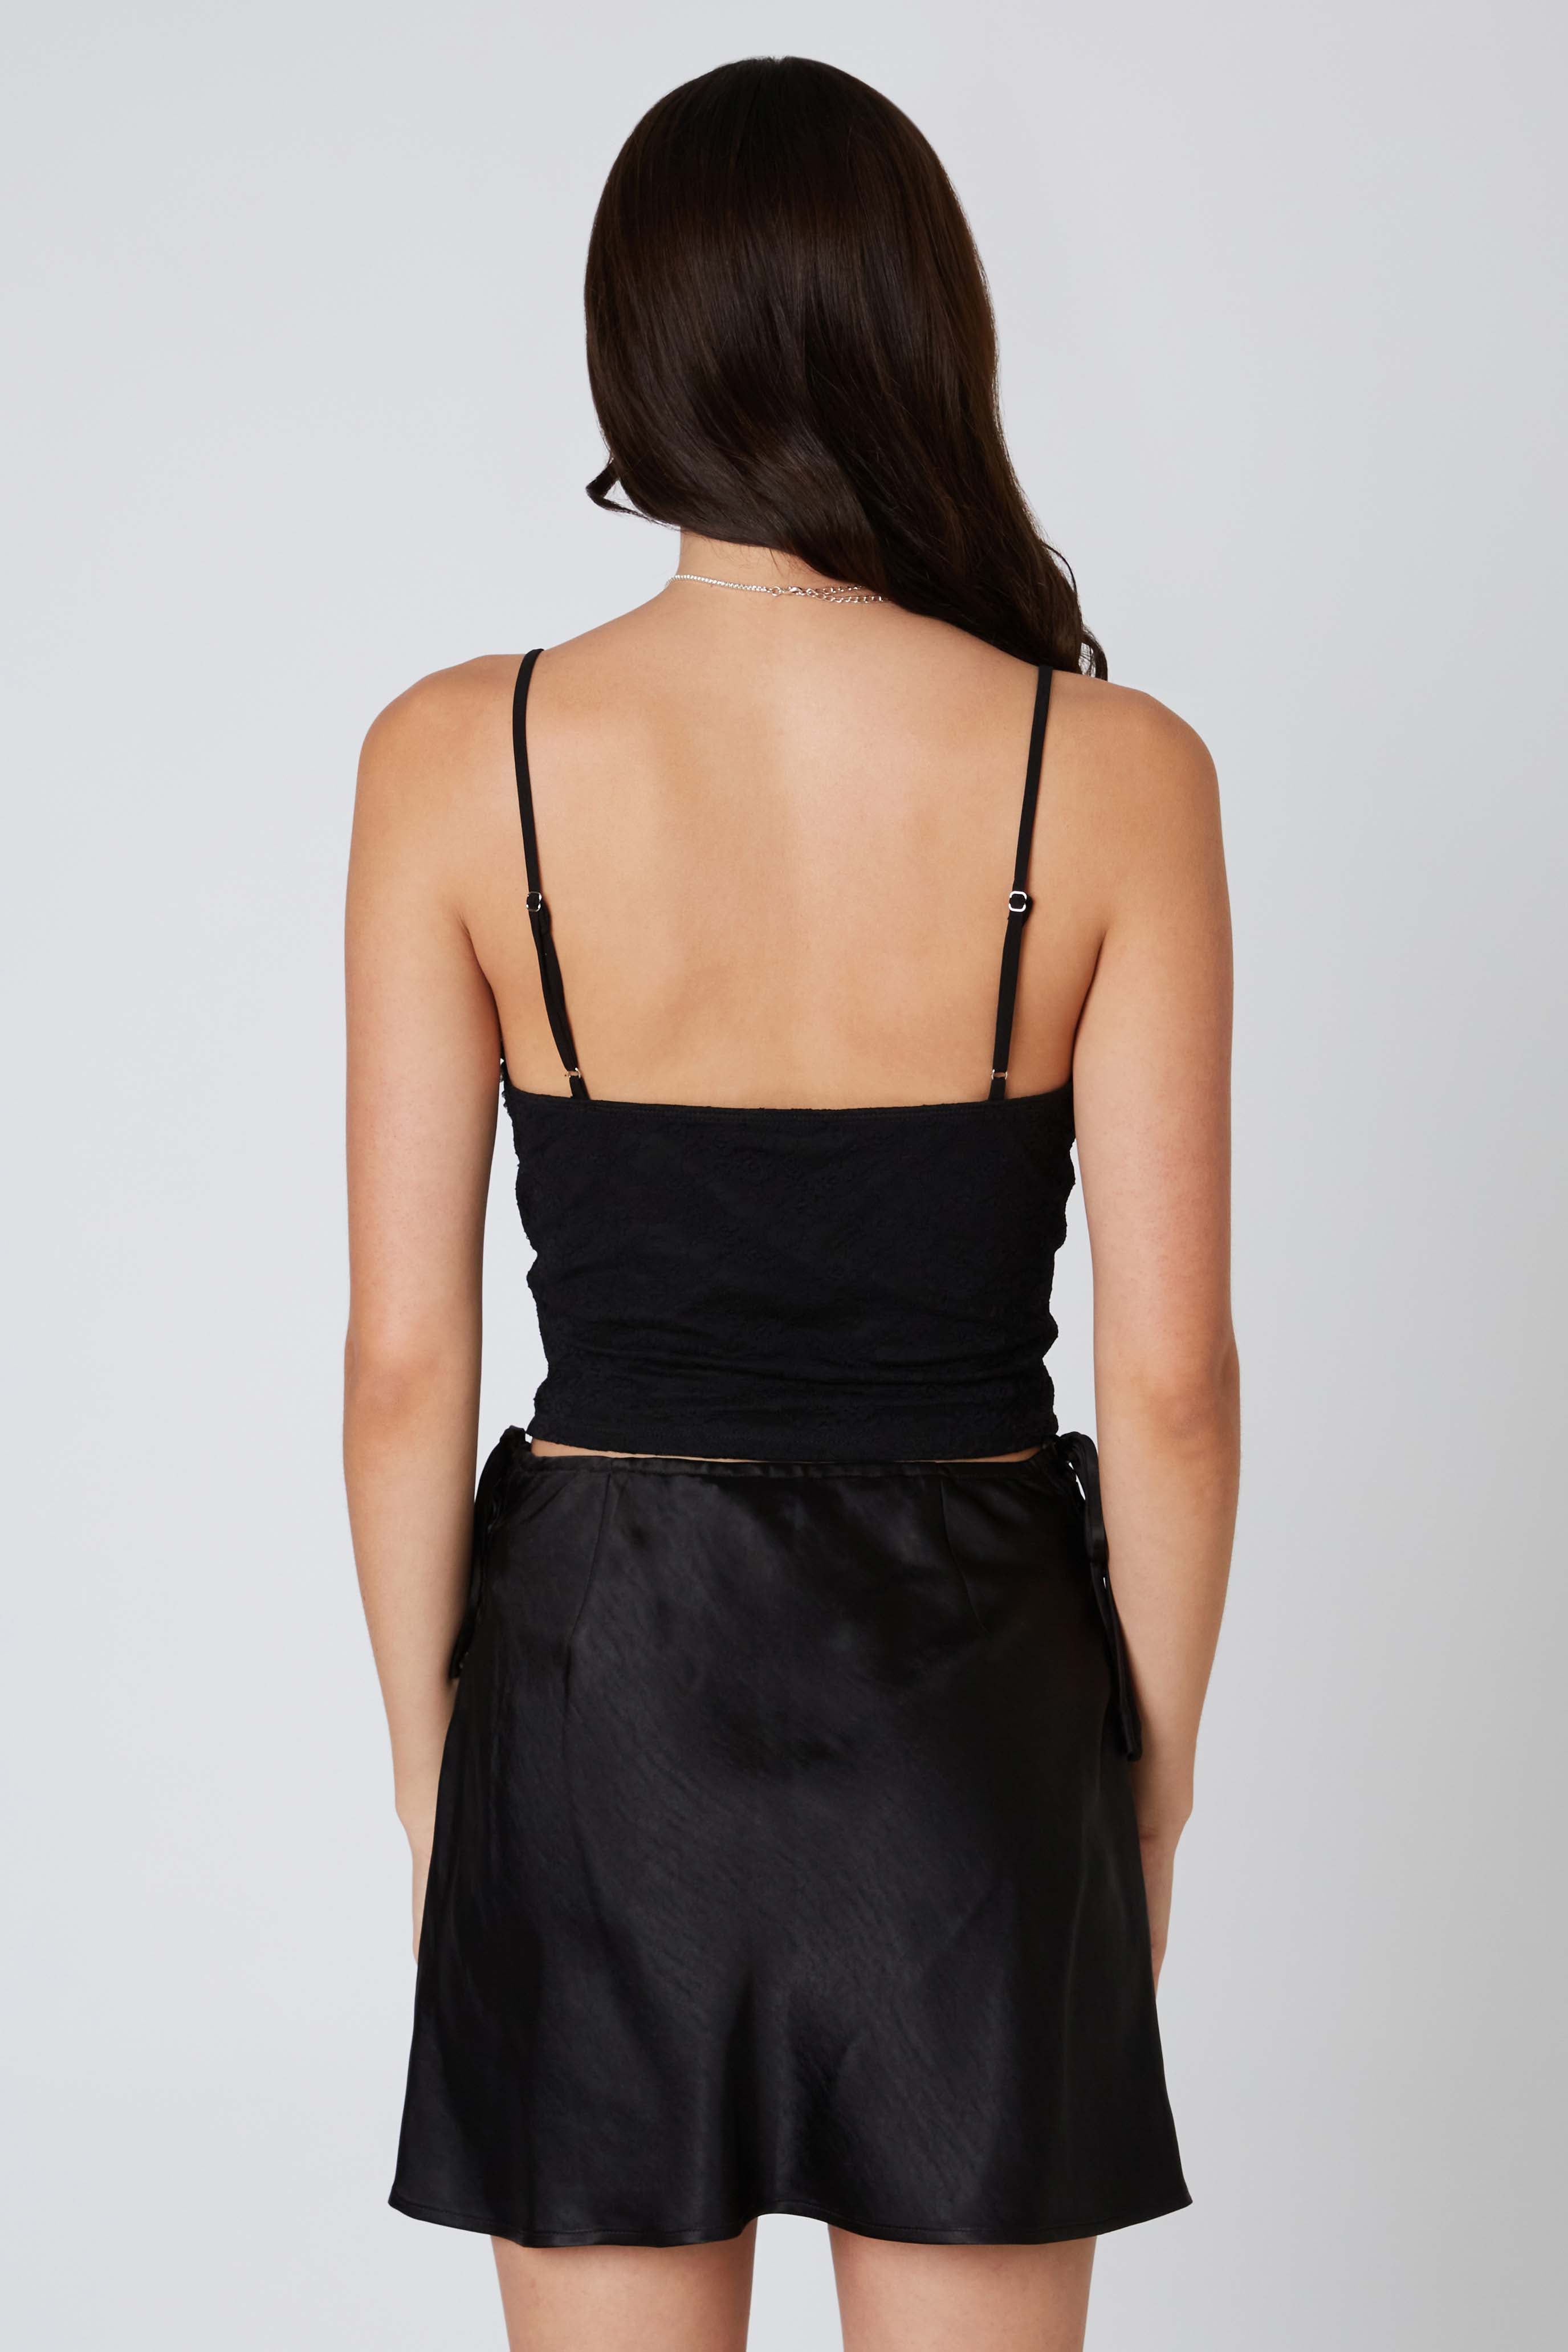 Satin Mini Skirt in Black Back View